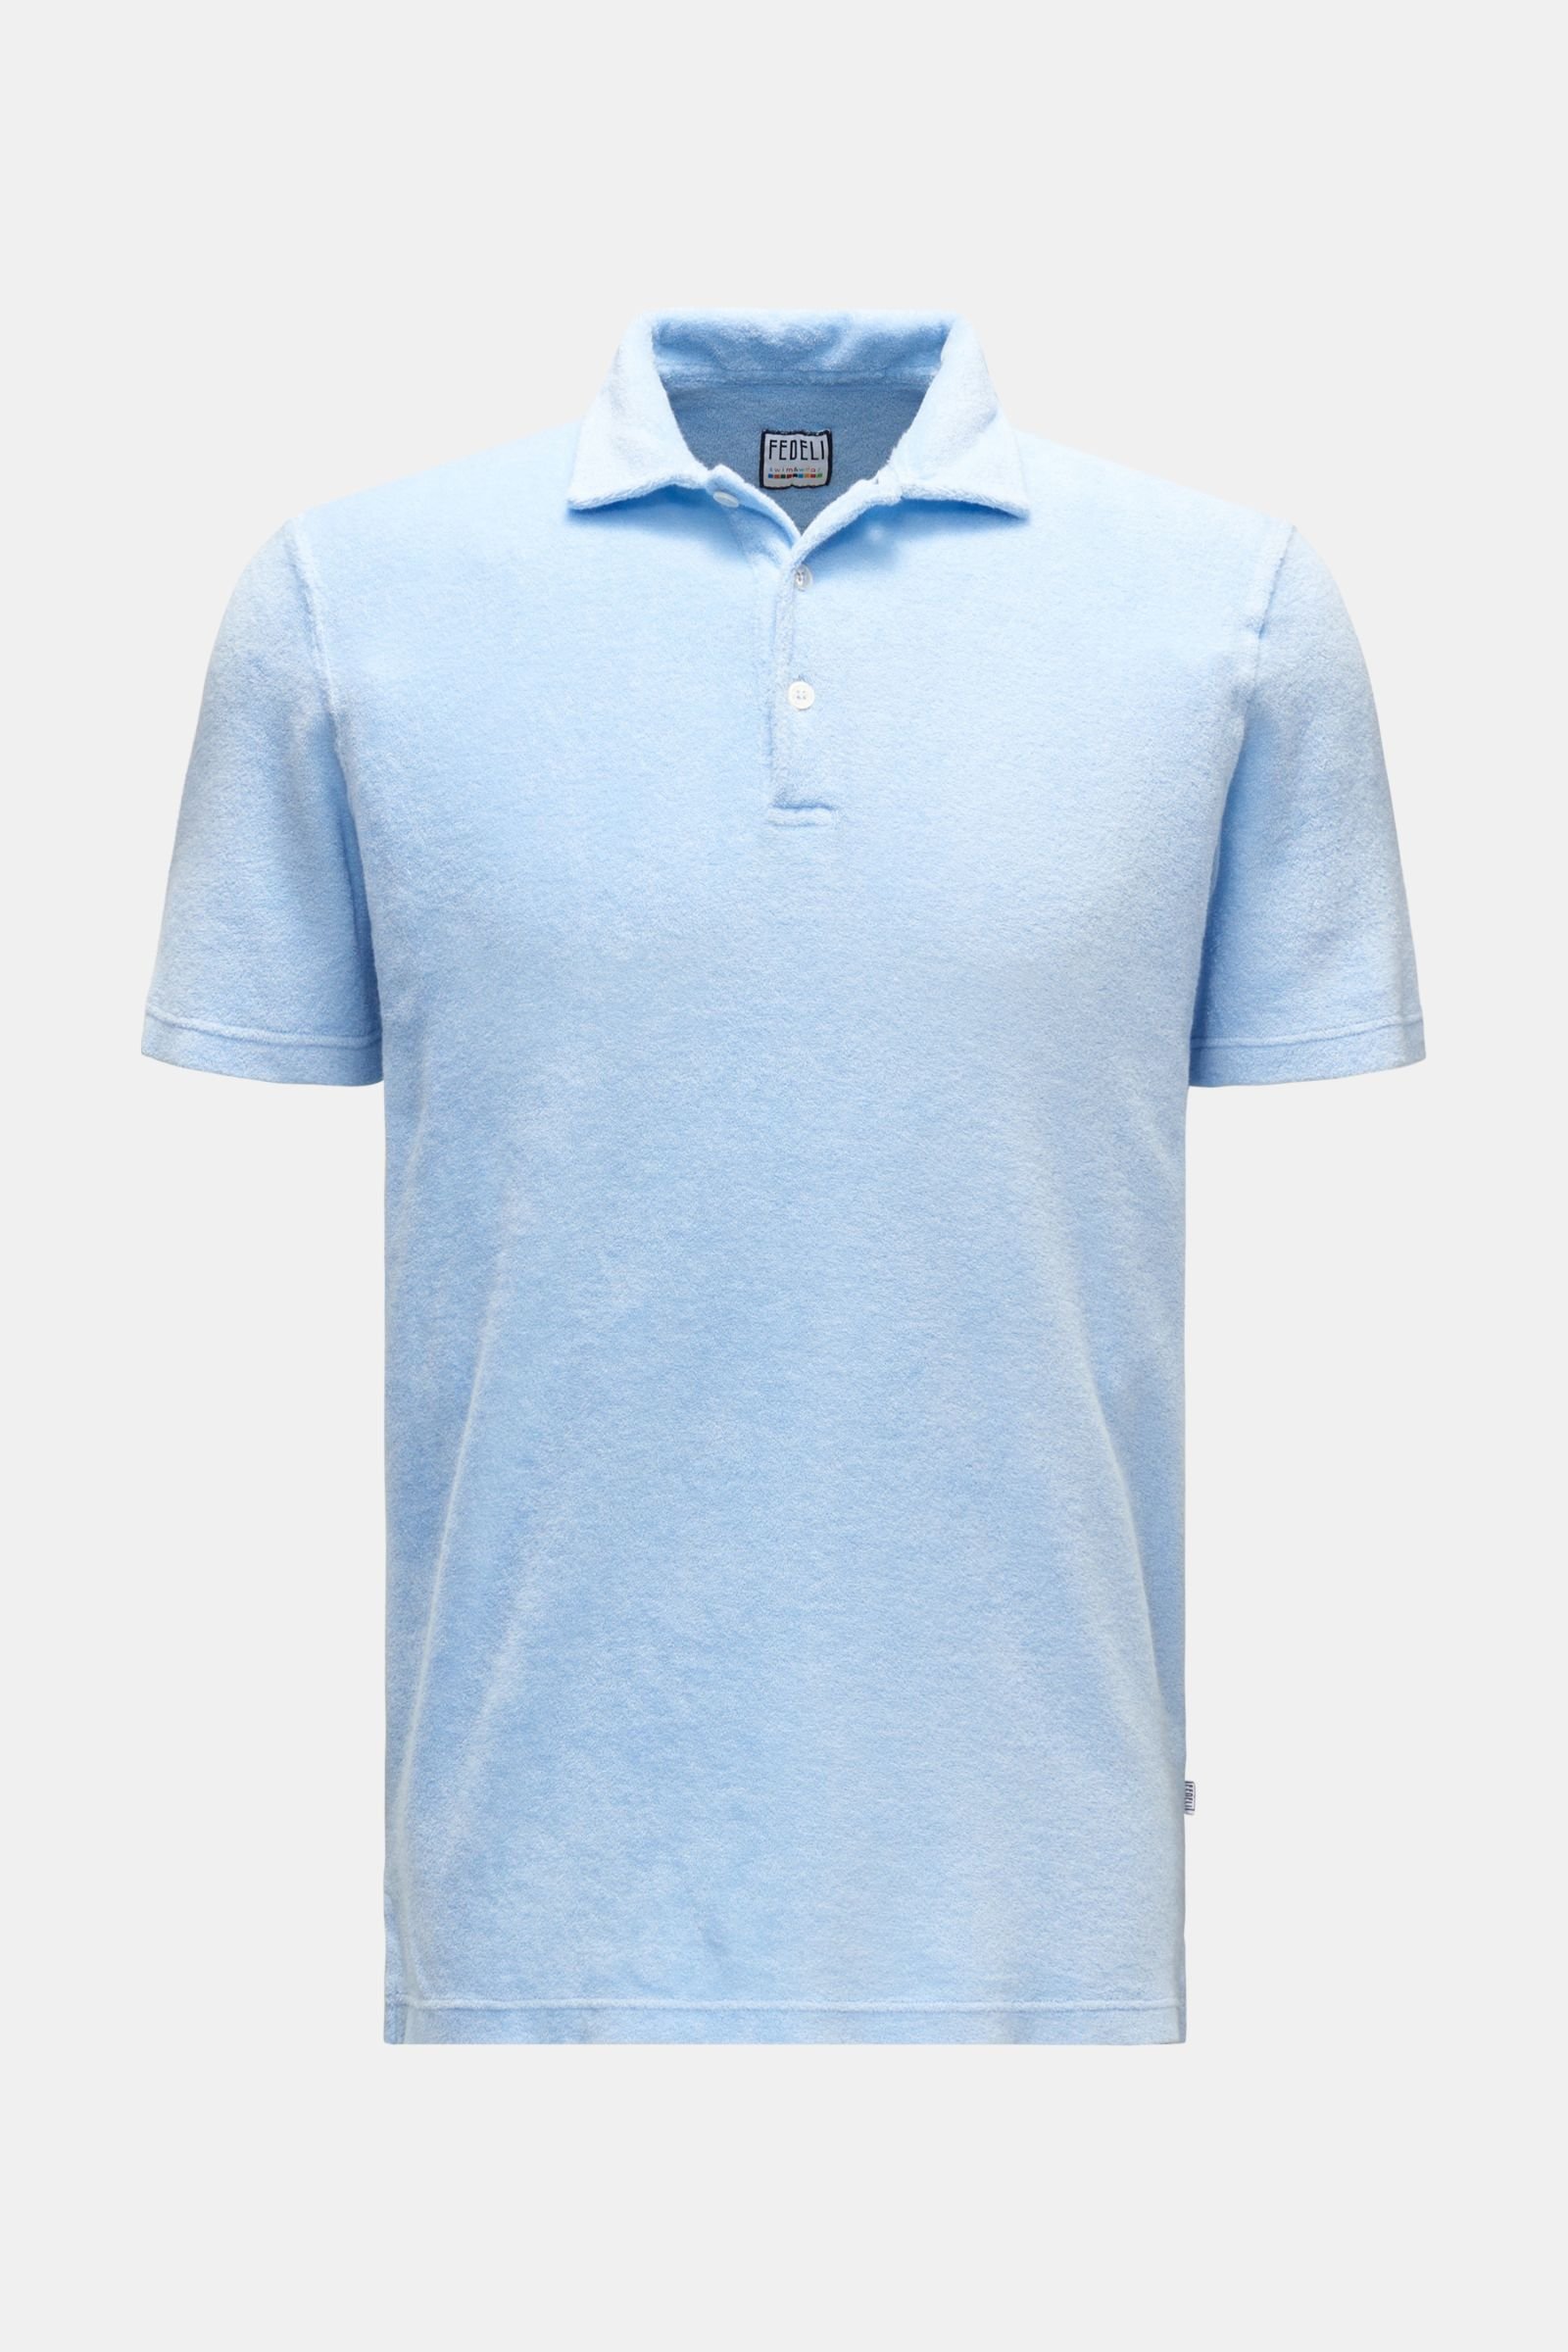 Terry polo shirt 'Terry Mondial' light blue